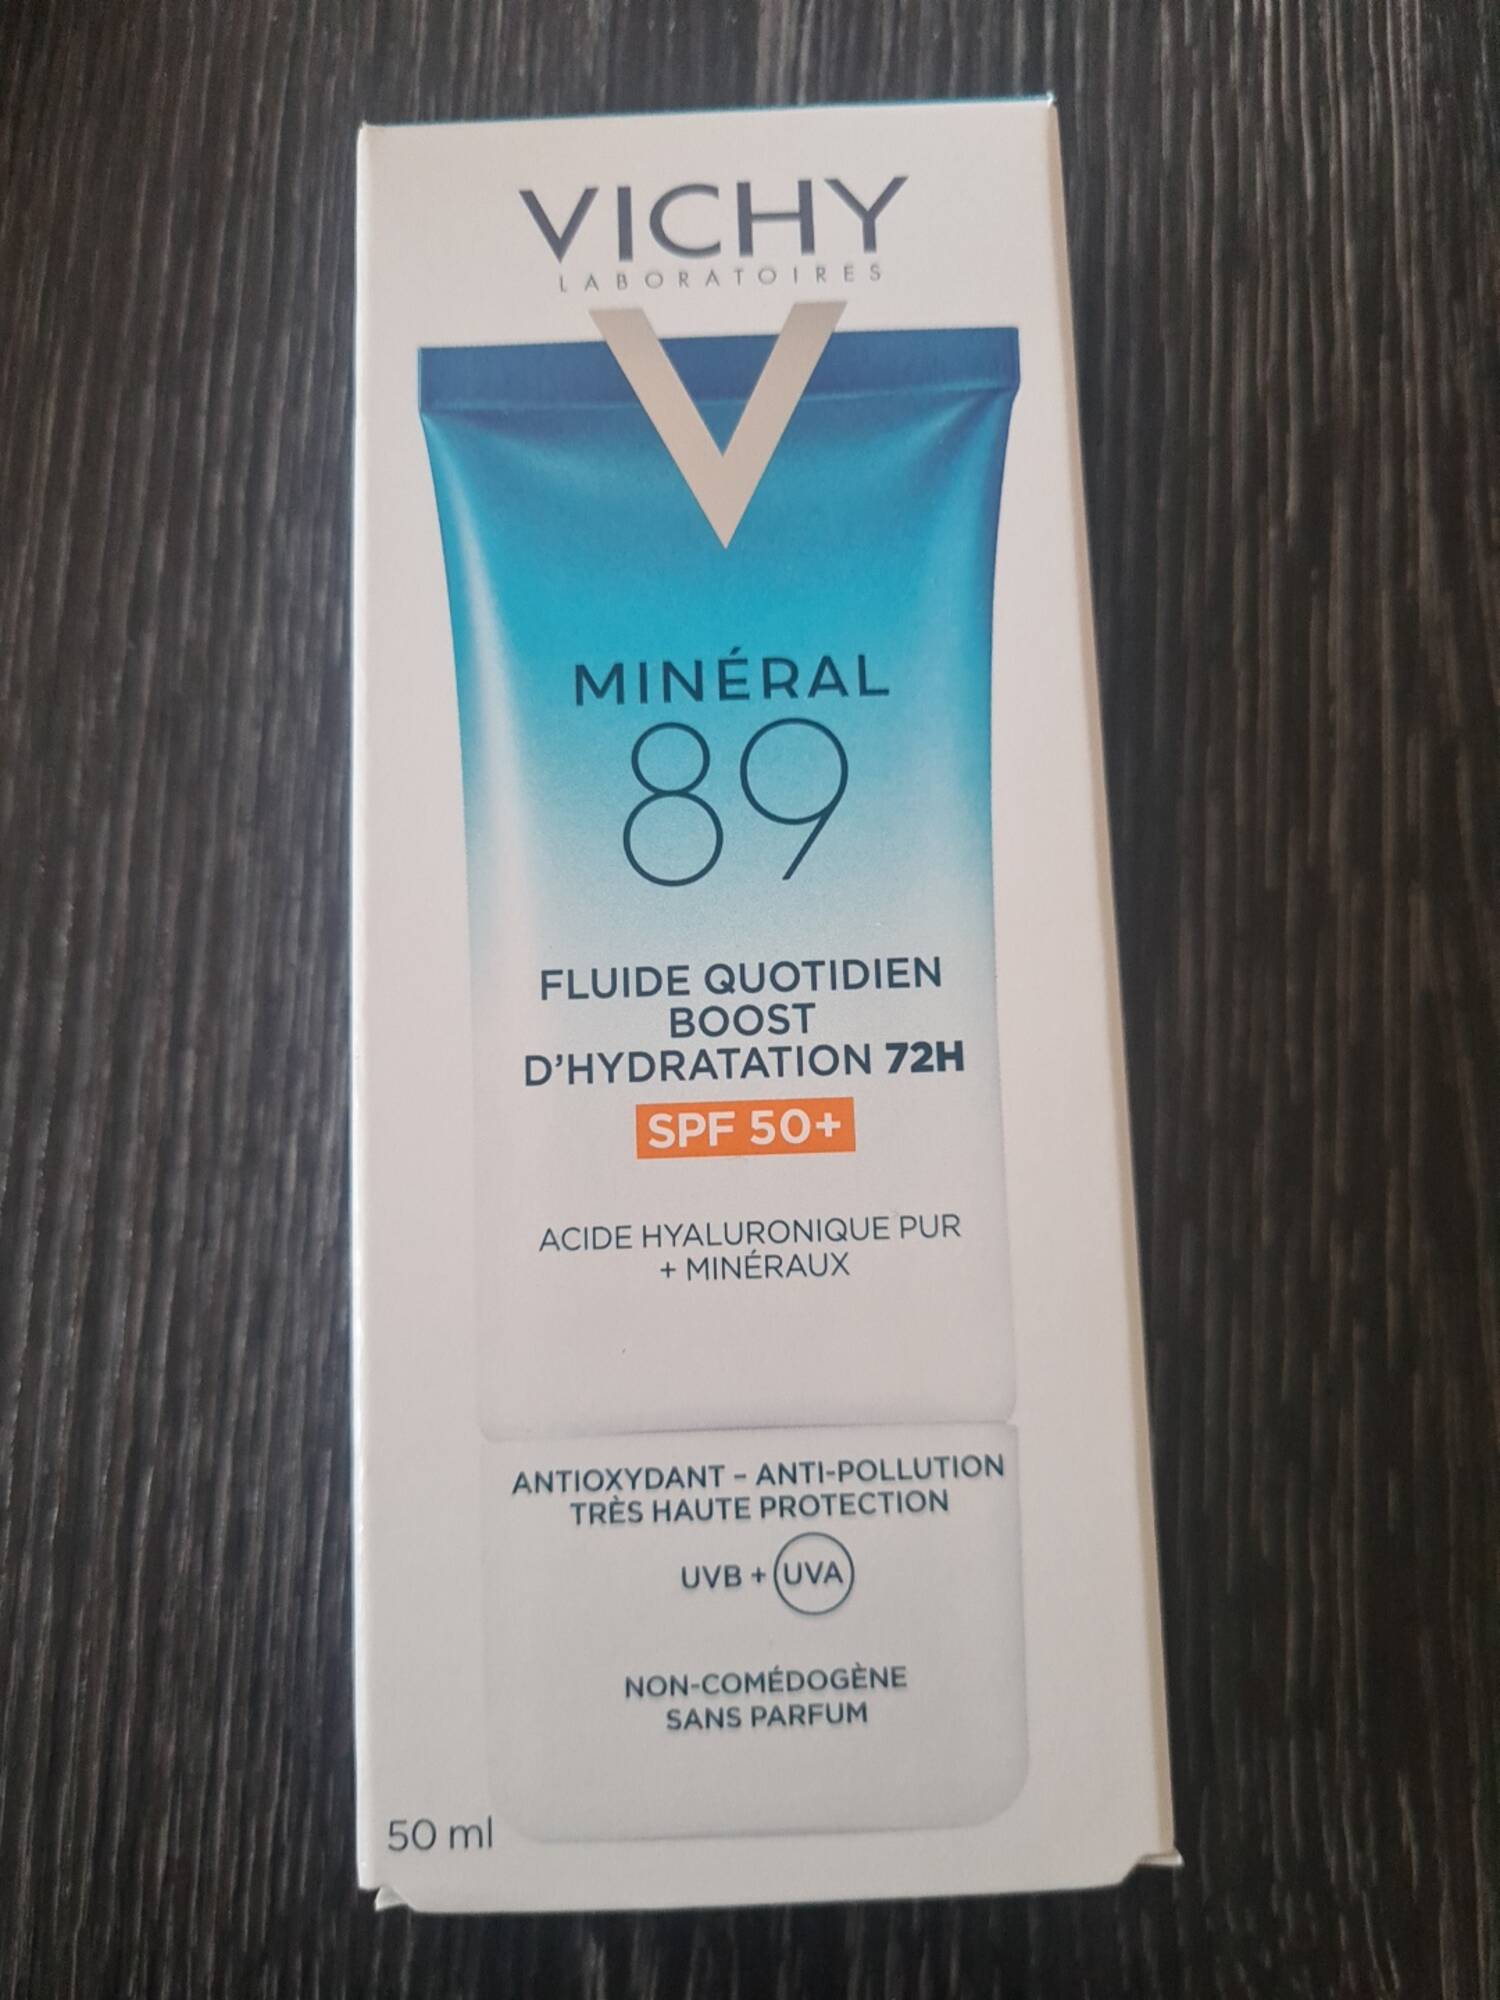 VICHY - Minéral 89 - Fluide quotidien boost d'hydratation SPF 50+